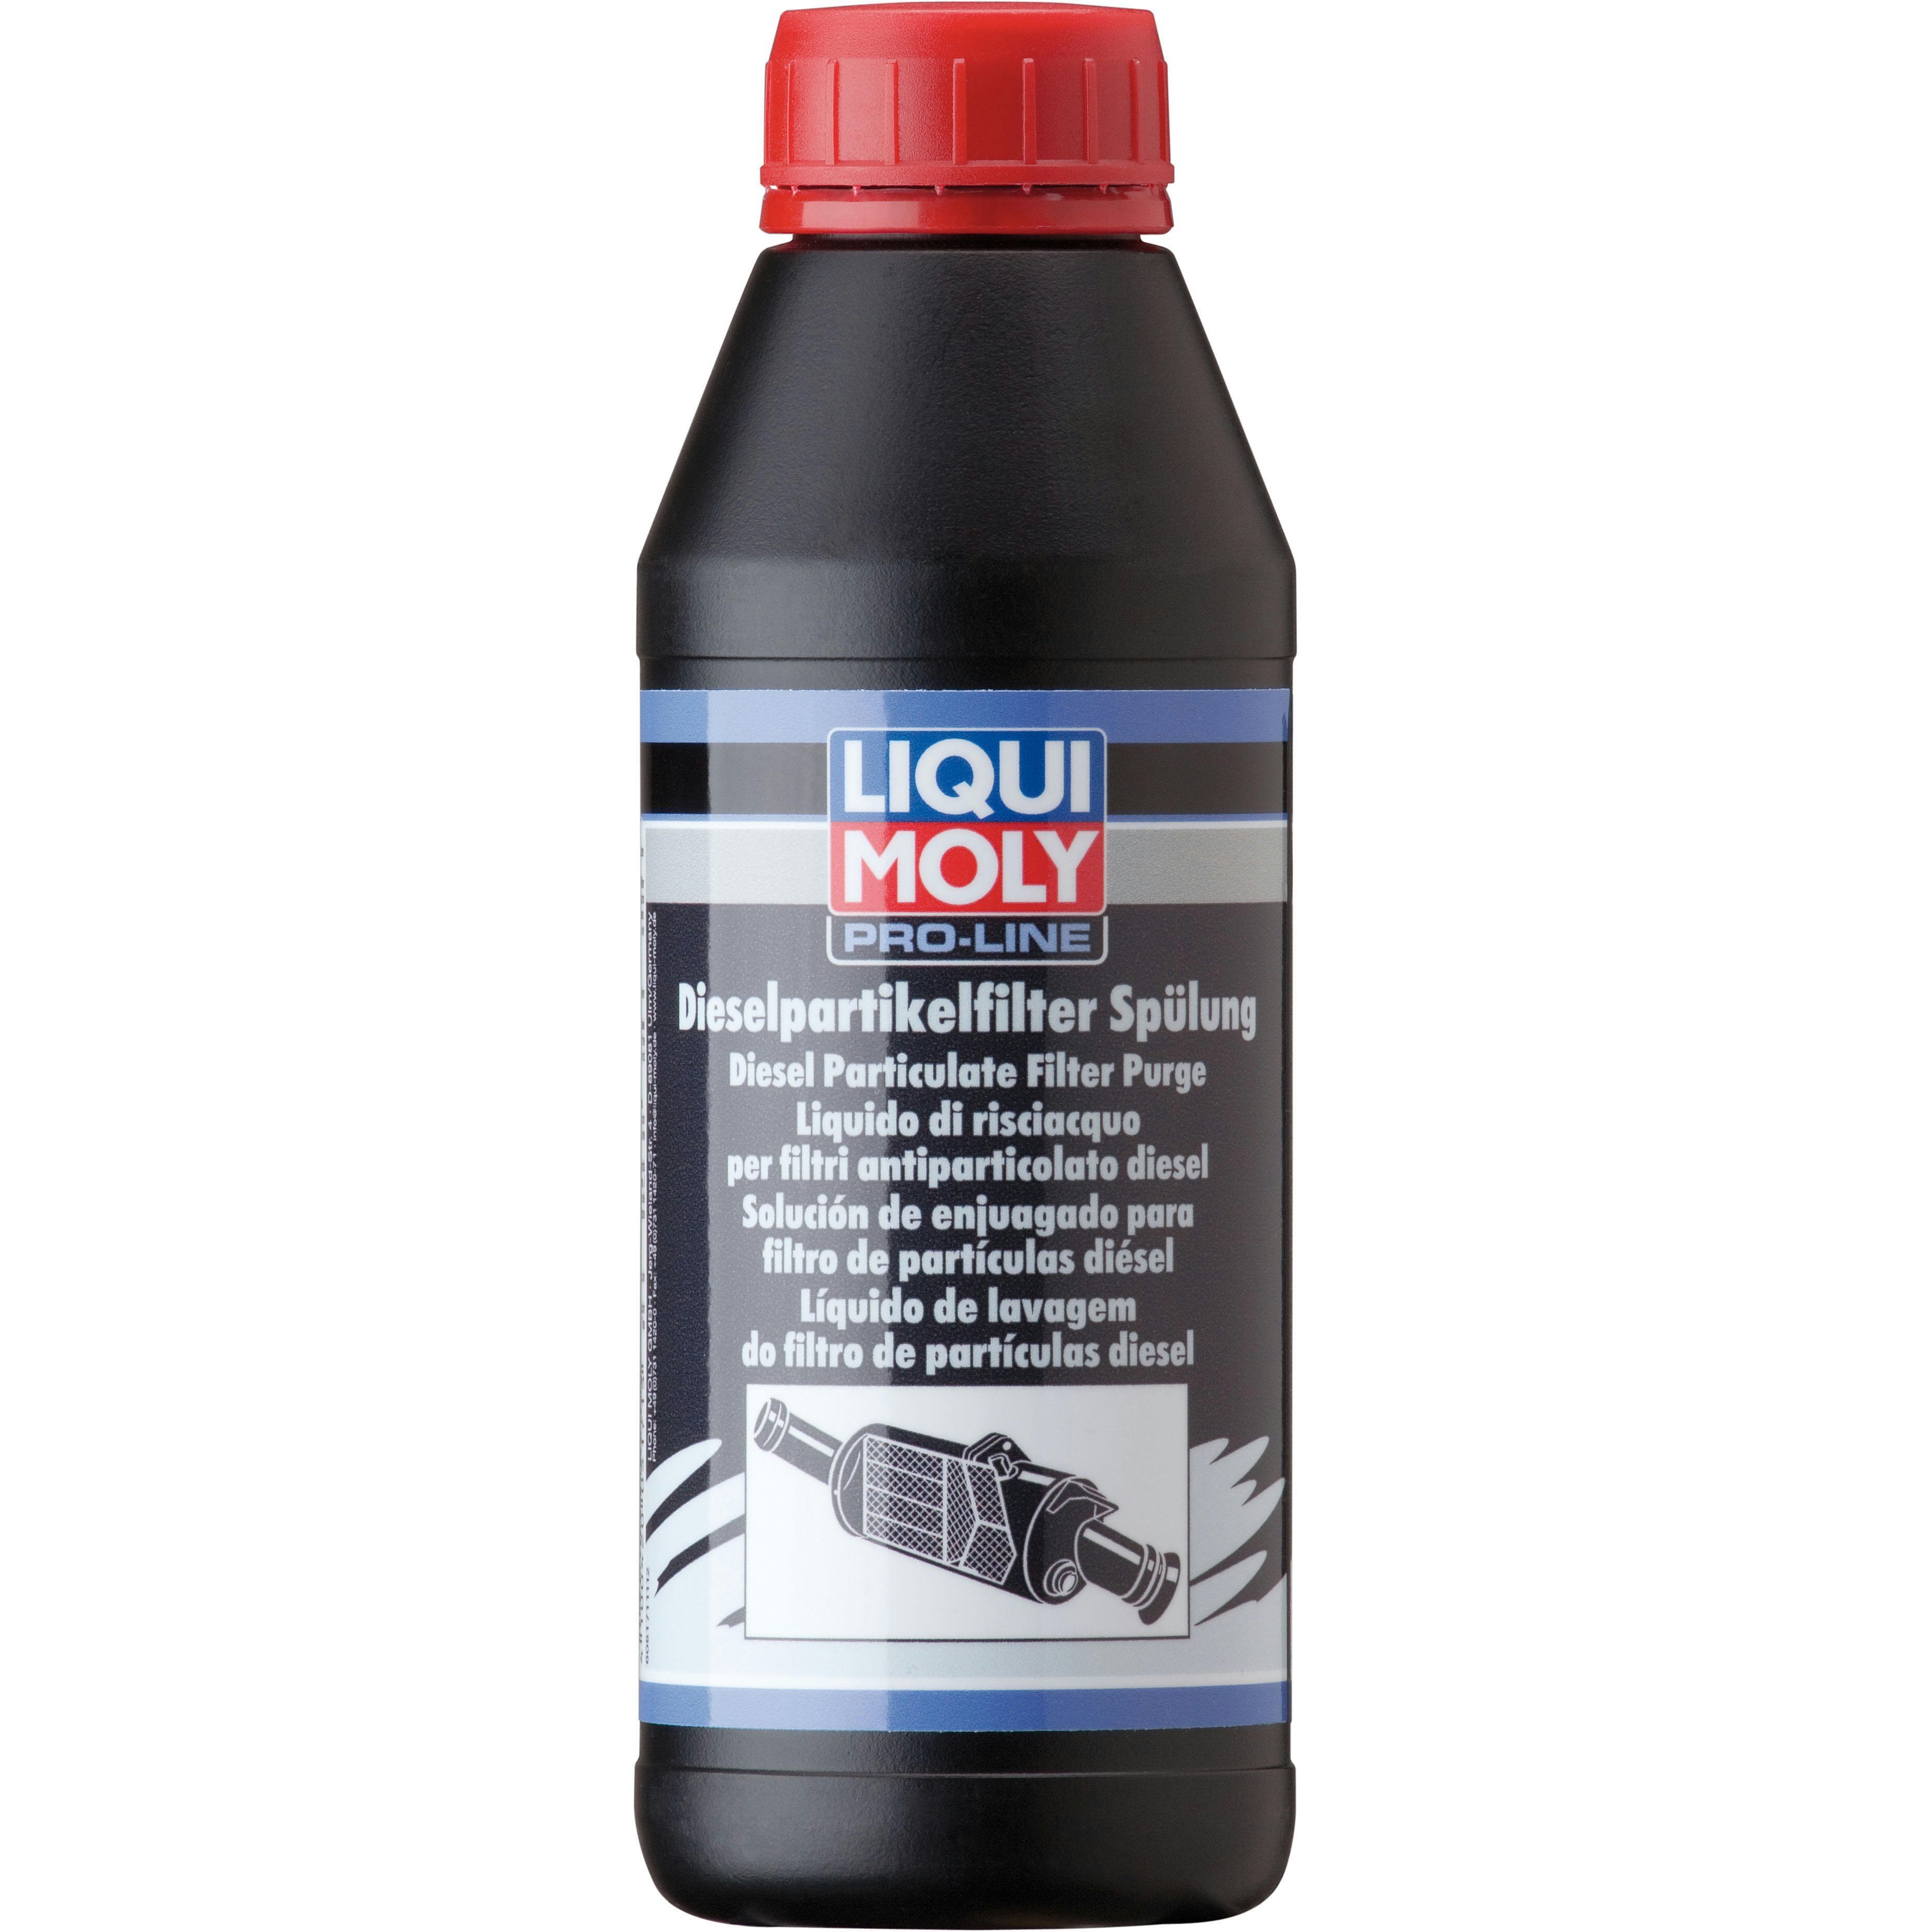 Очисник Liqui Moly для очищення фільтрів сажі (змивка) Pro-Line Dpf Spulung 0,5л (4100420051715)фото1